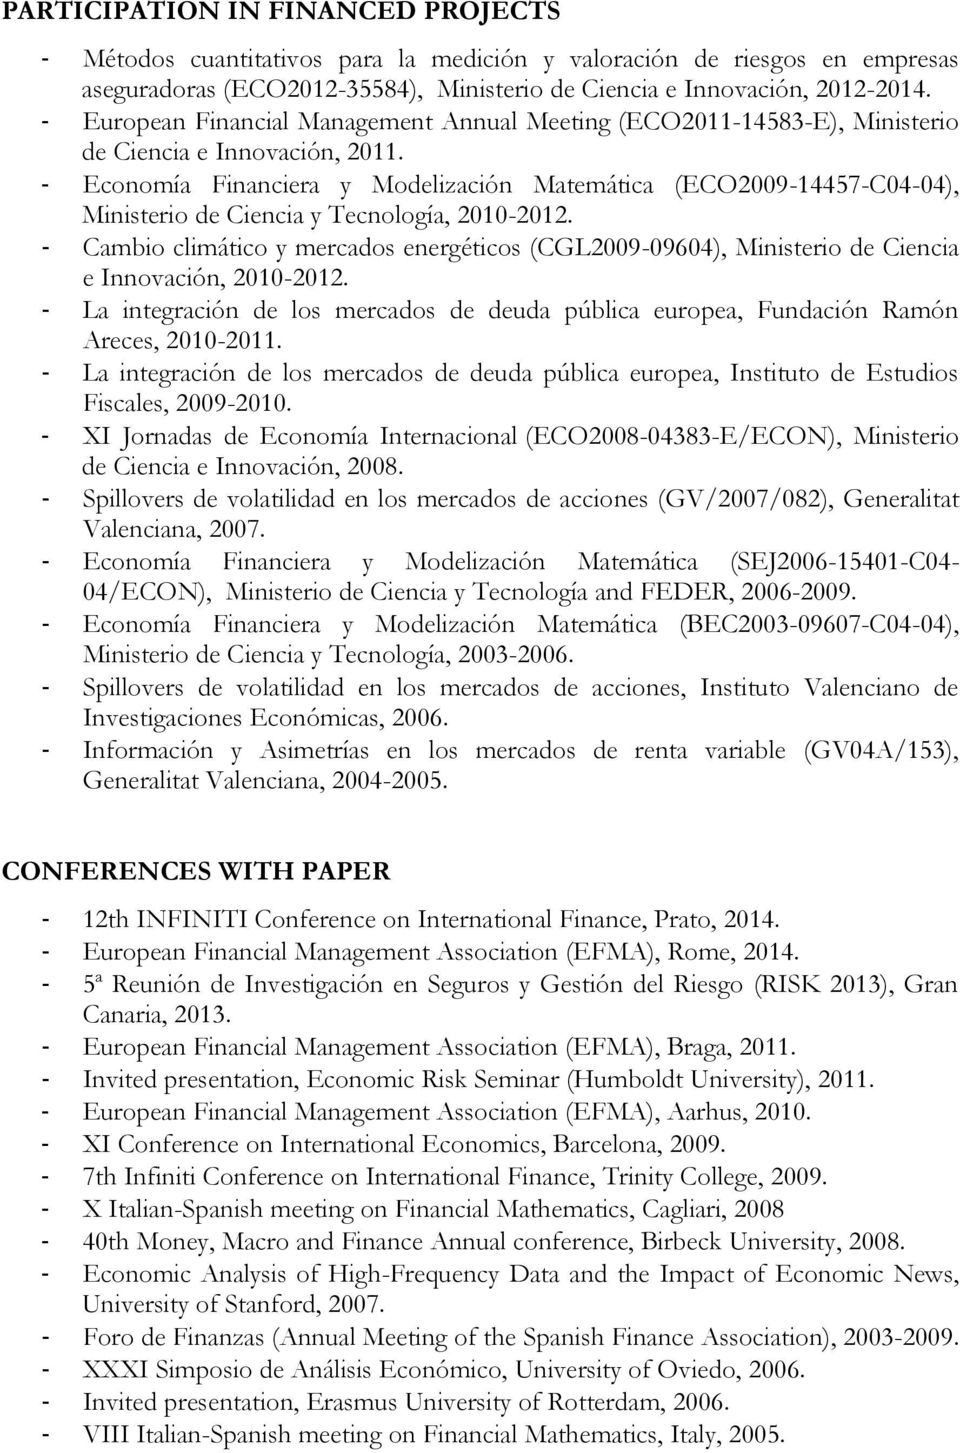 - Economía Financiera y Modelización Matemática (ECO2009-14457-C04-04), Ministerio de Ciencia y Tecnología, 2010-2012.